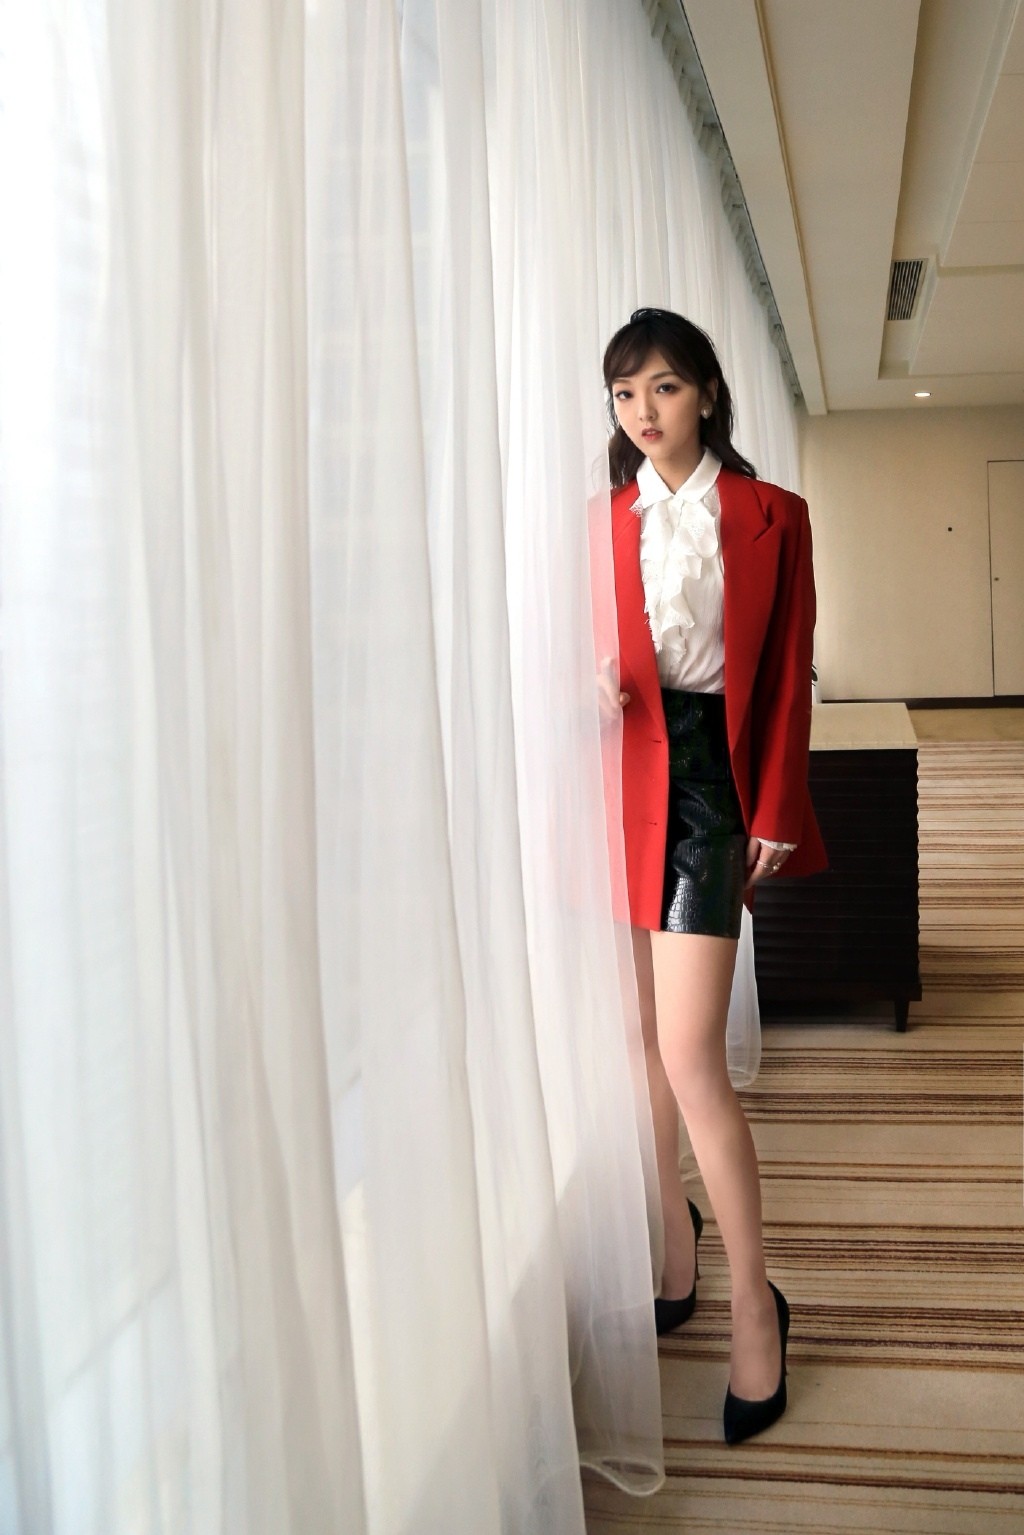 强东玥红色西装时尚干练活动照图片